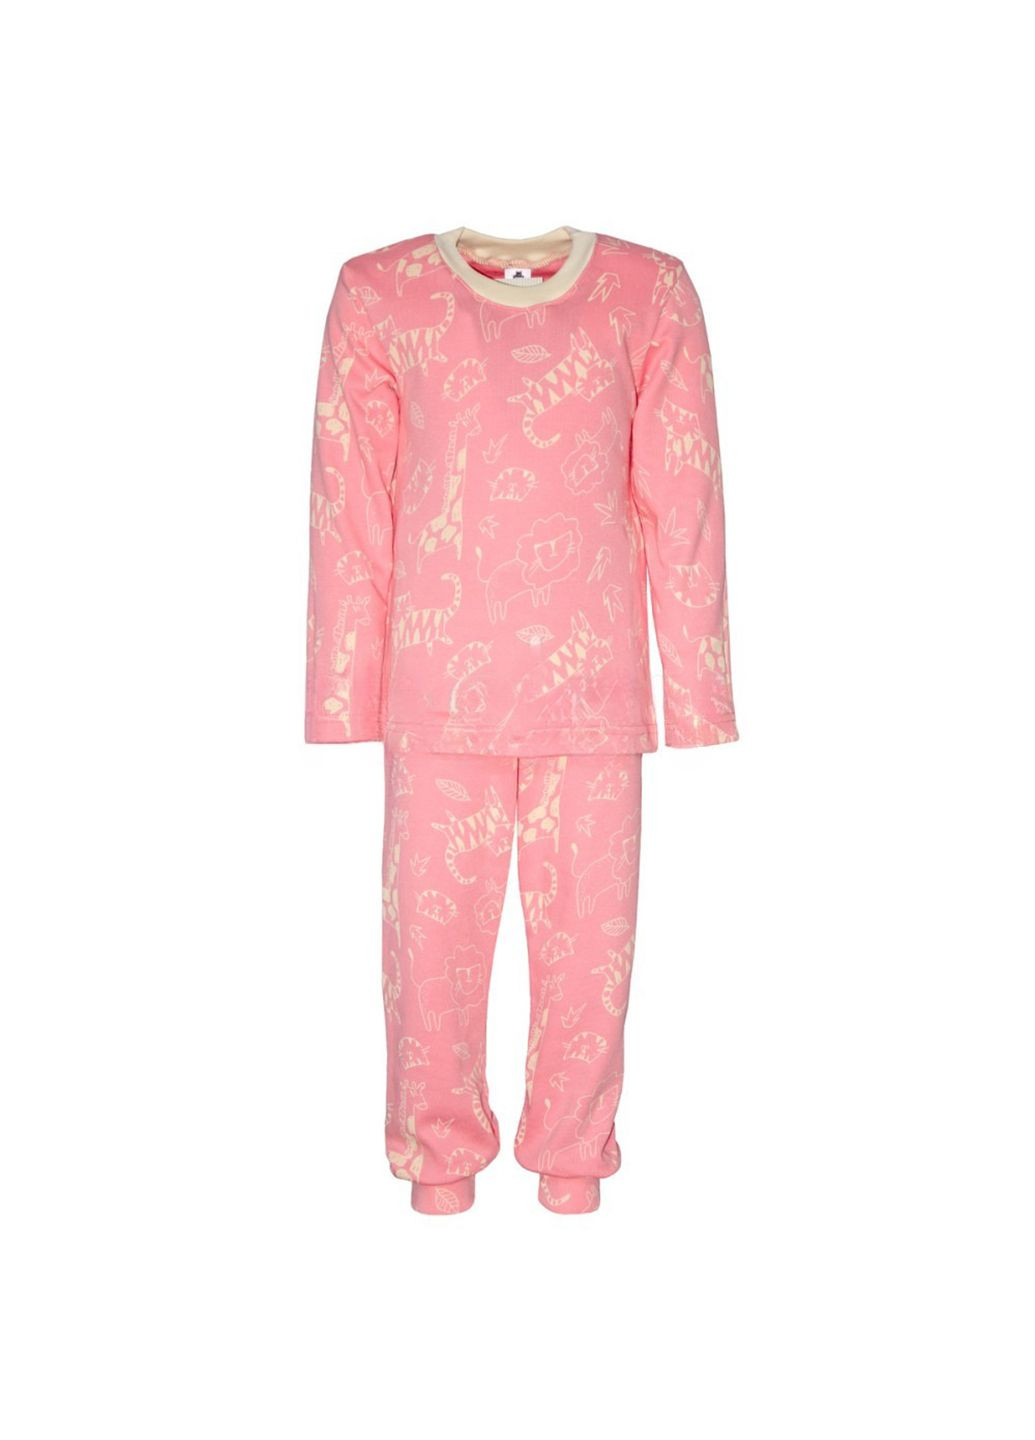 Розовая всесезон пижама детская интерлок м.д-011 реглан + брюки Ярослав